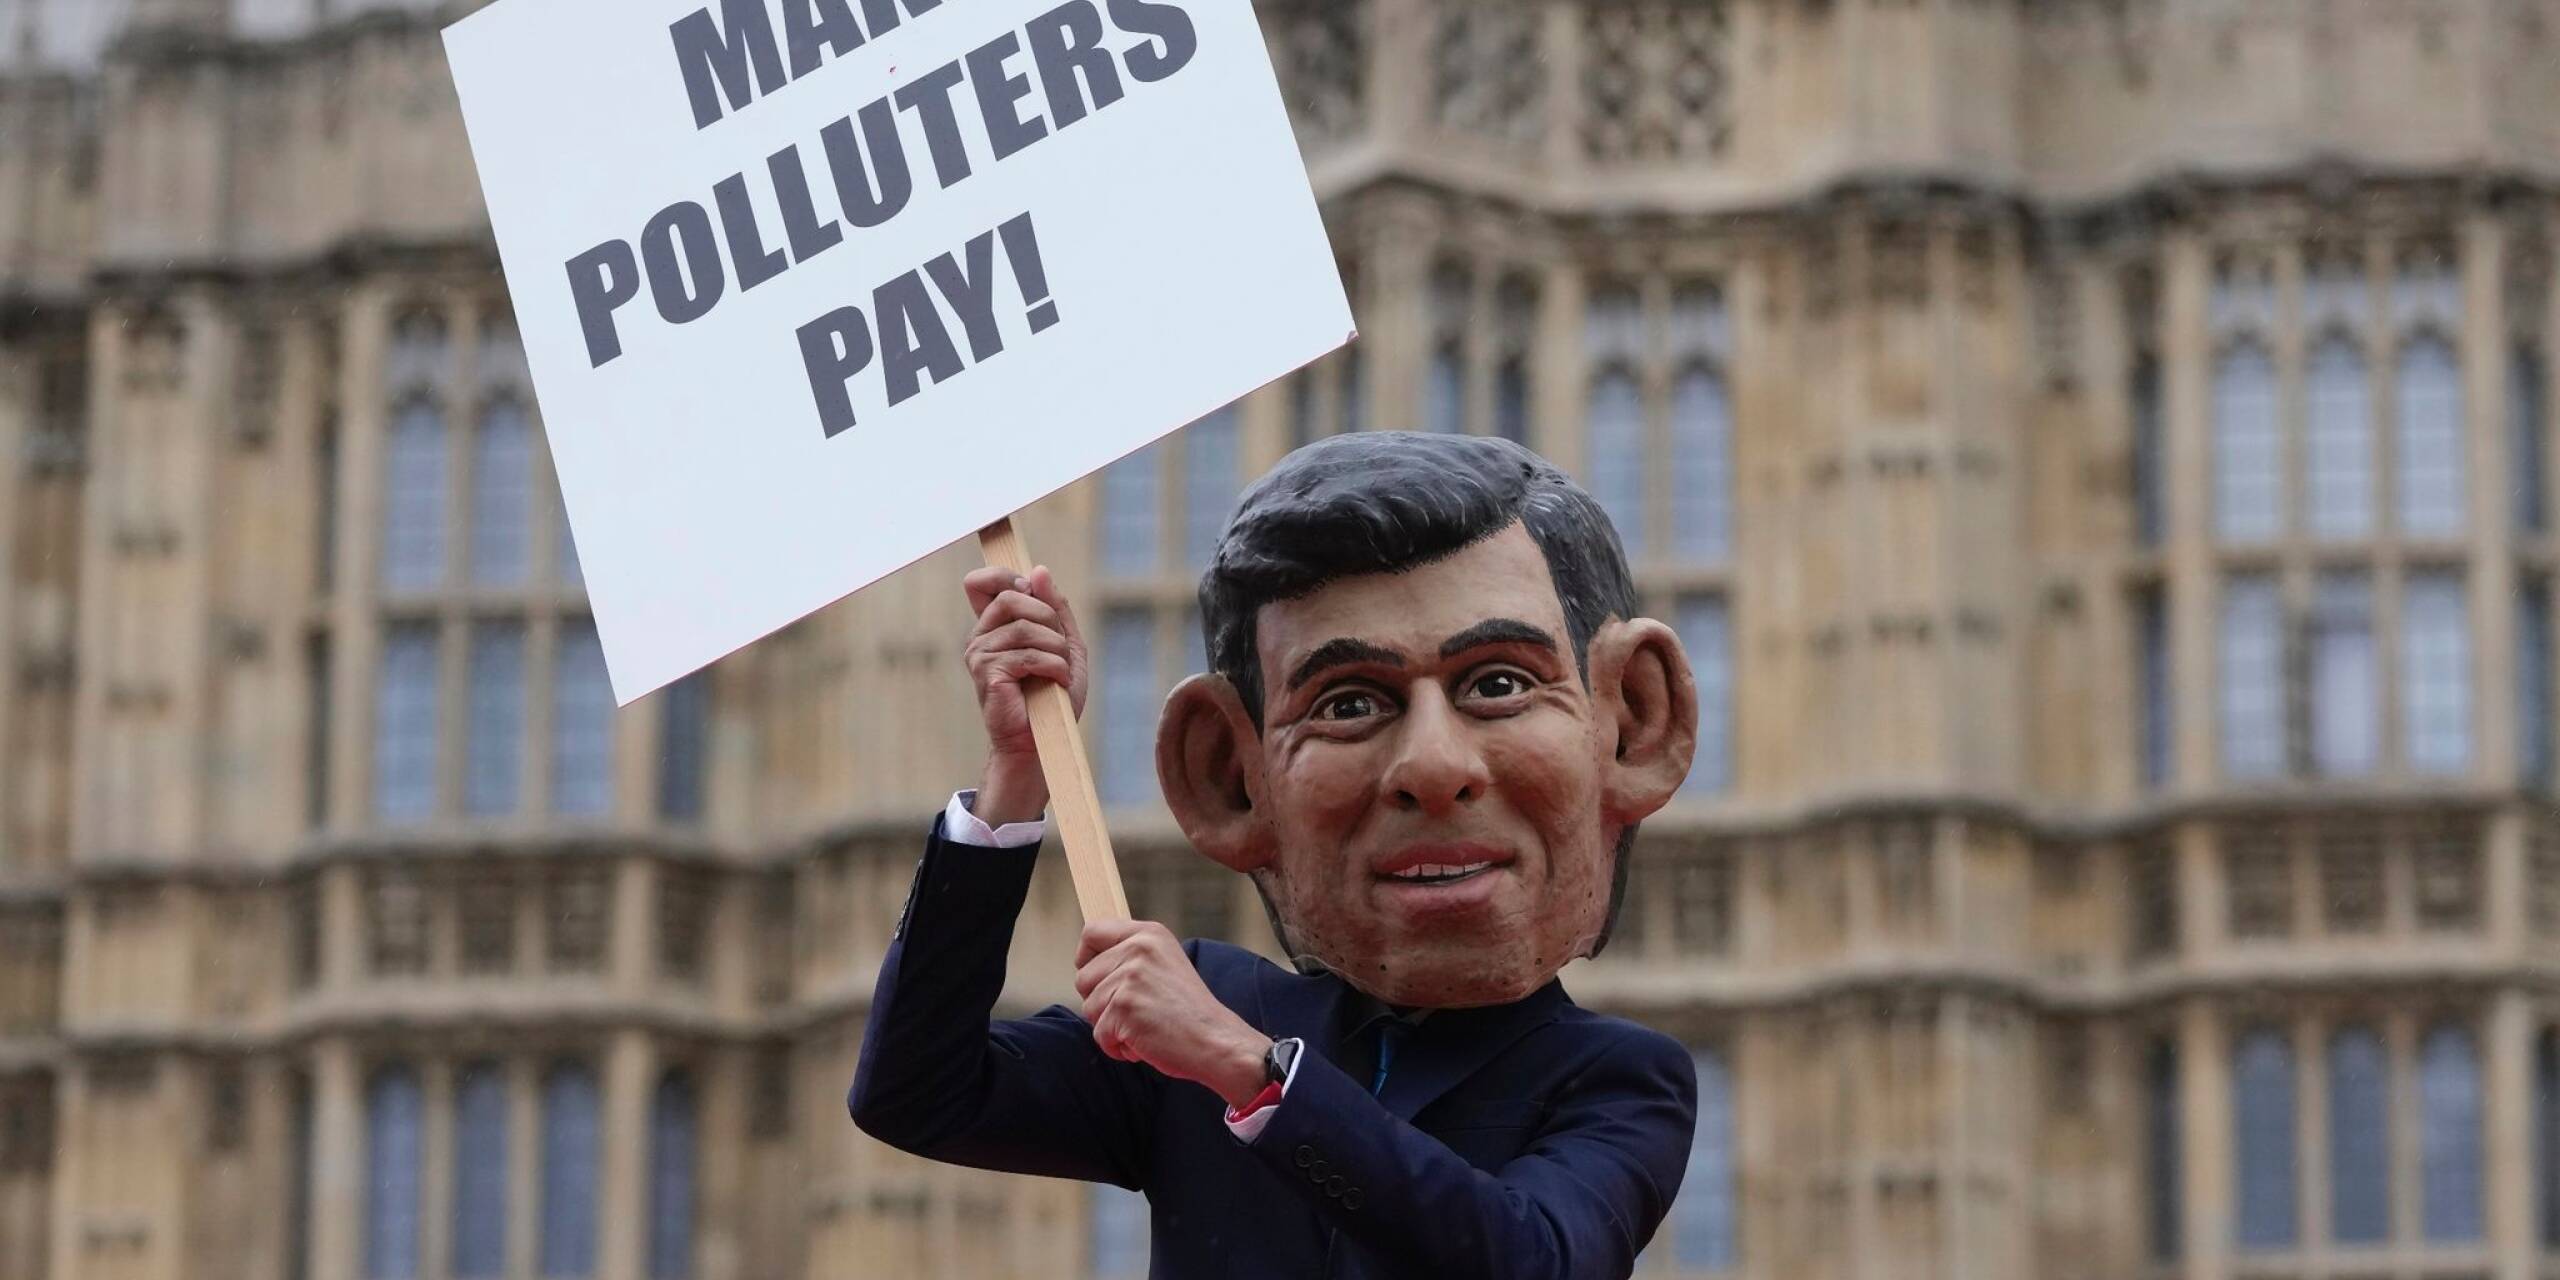 «Make Polluters Pay» fordert ein Oxfam-Demonstrant in London. Die Kampagne fordert, dass Öl- und Gasriesen wie BP und Shell mehr Steuern zahlen, um die notwendigen Mittel für die Unterstützung der vom Klimawandel verwüsteten Gemeinden aufzubringen.